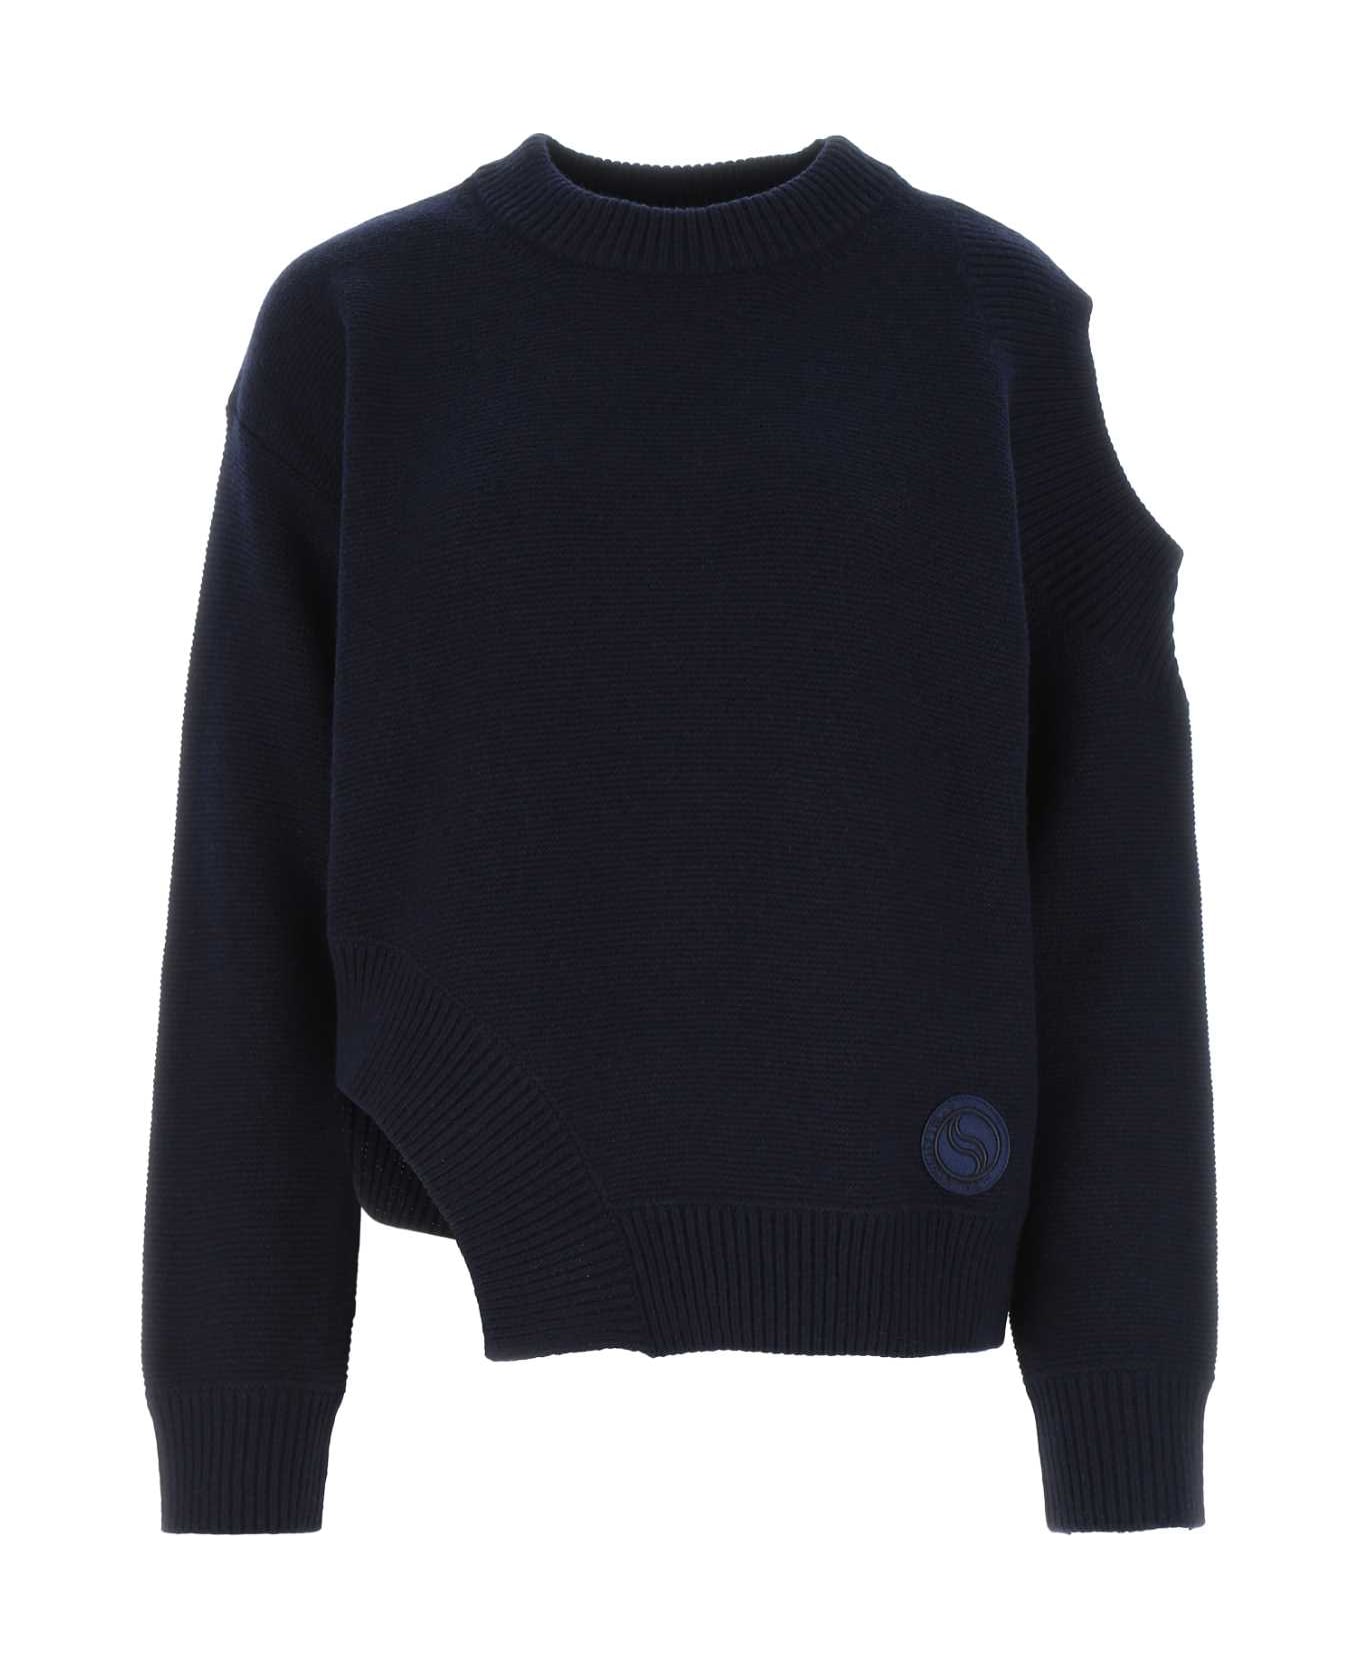 Stella McCartney Dark Blue Cashmere Blend Sweater - 4000